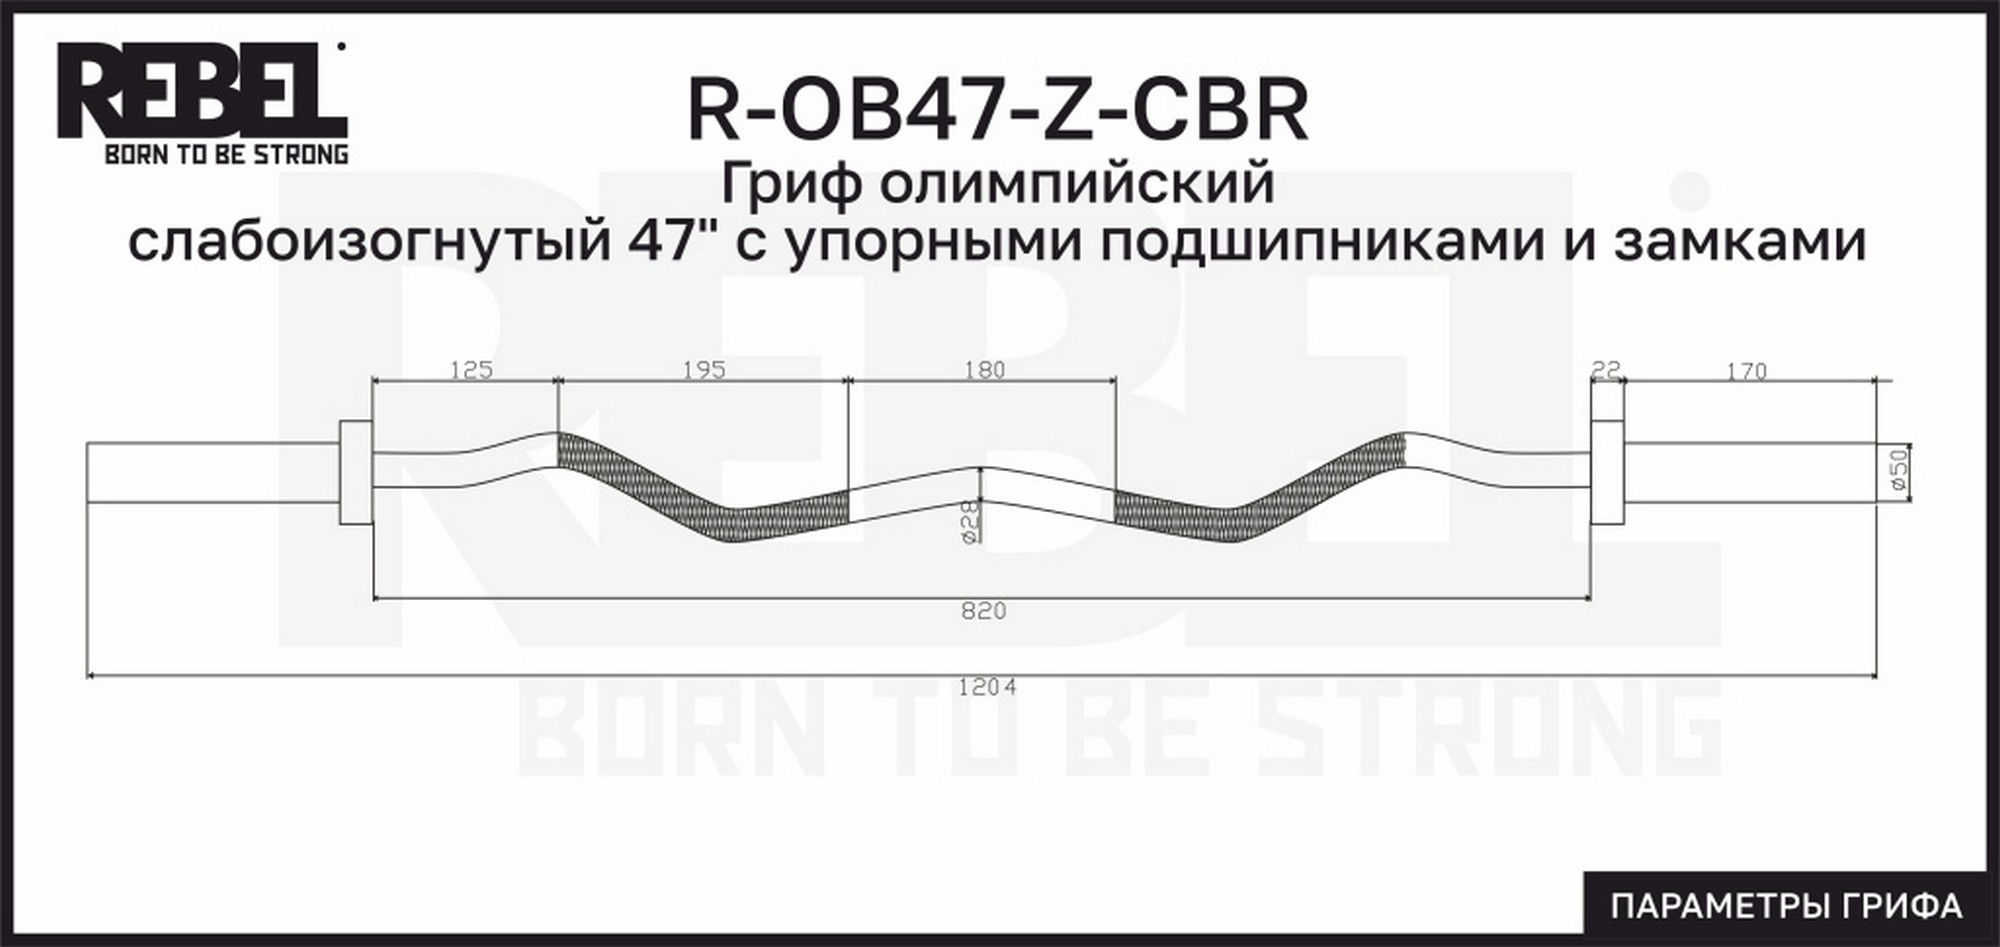 Гриф олимпийский слабоизогнутый 47" с упорными подшипниками и замками REBEL R-OB47-Z-CBR 2000_947